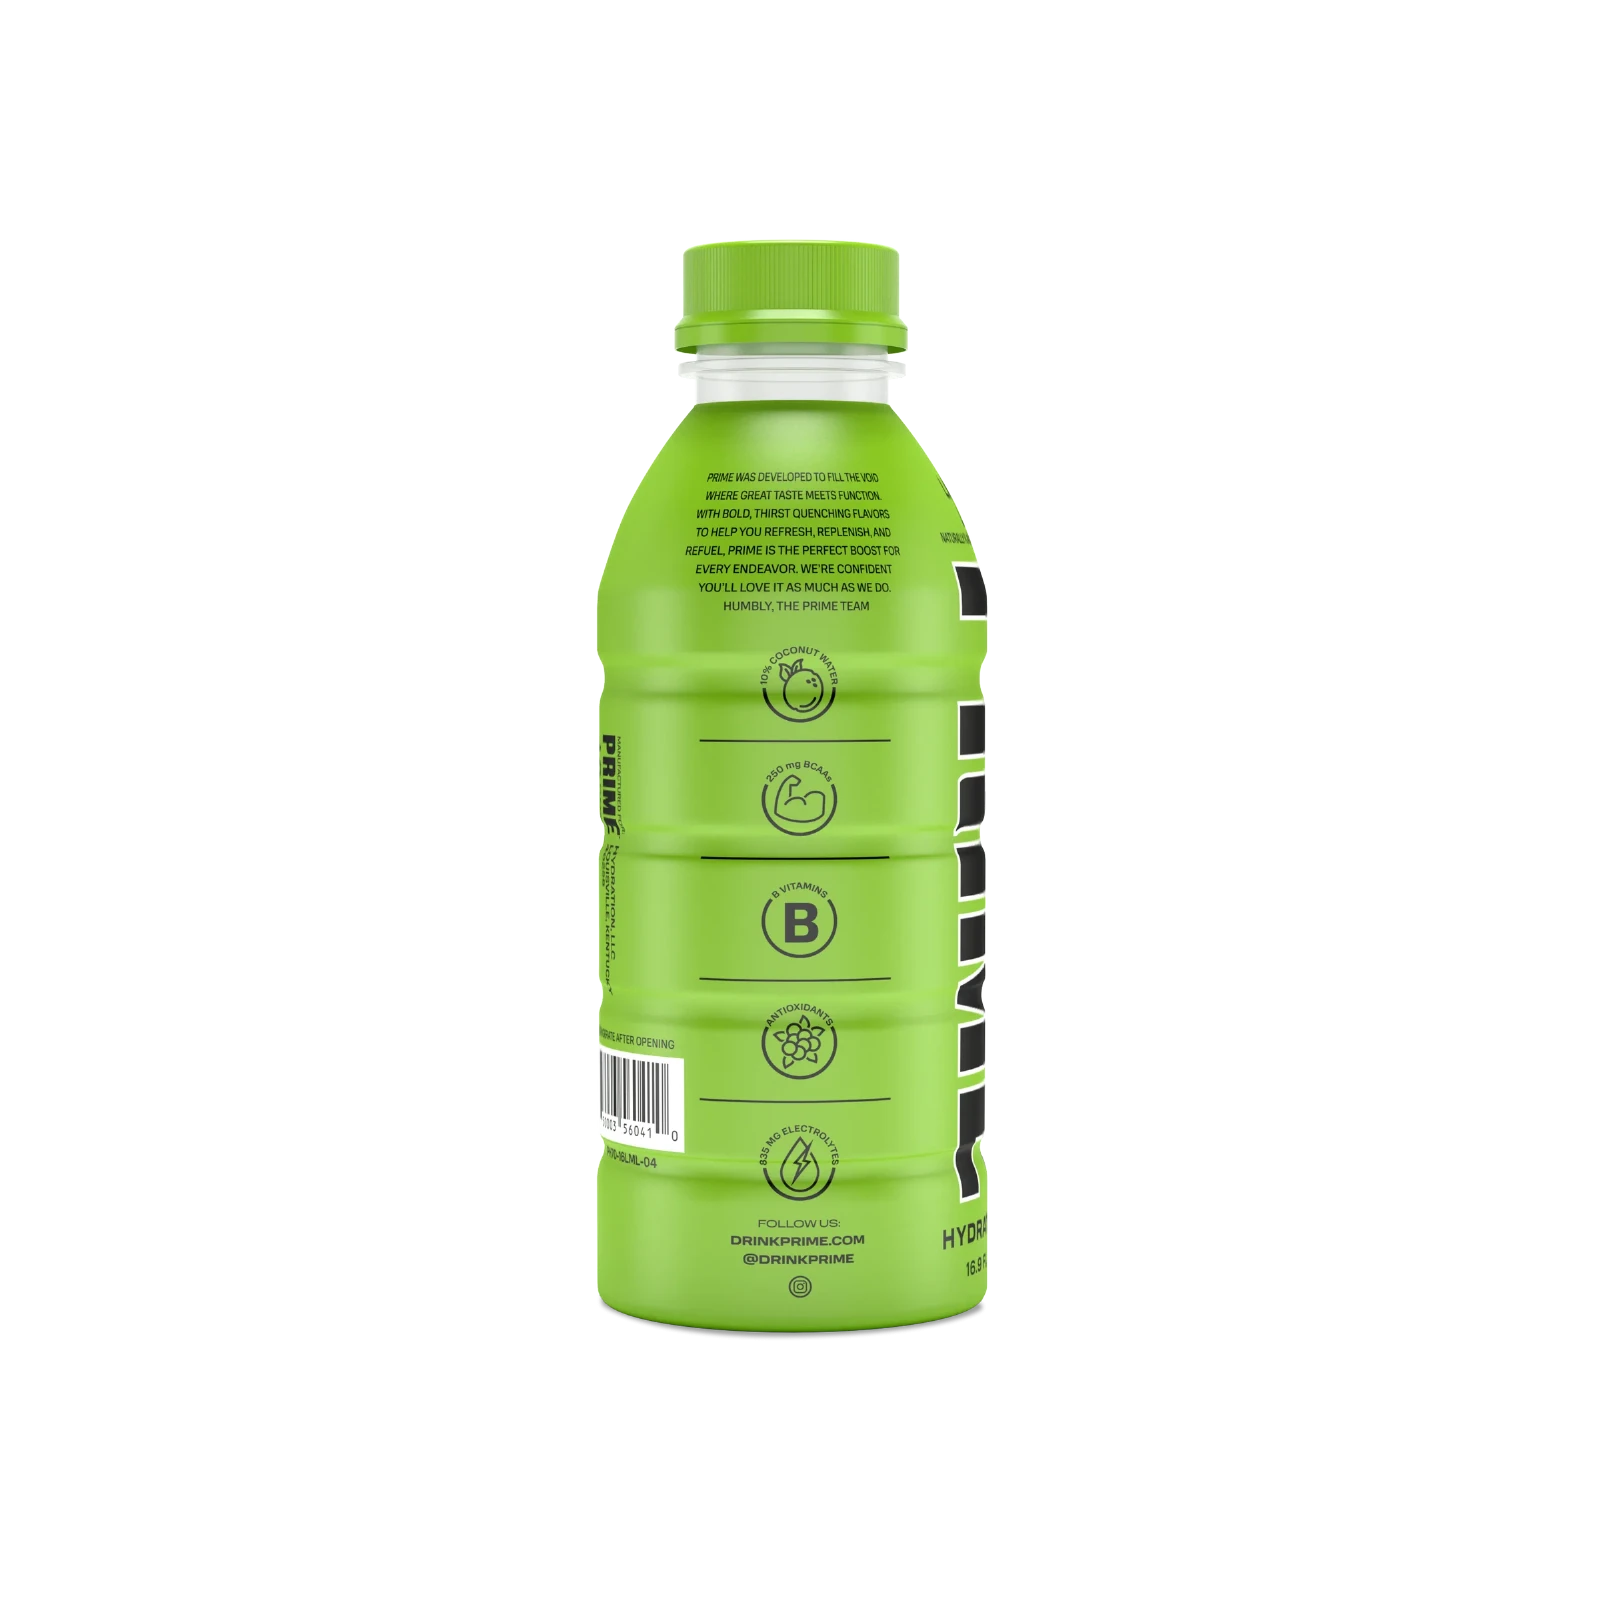 Prime Hydration - Sportdrink - Lemon Lime - 500 ml - Energy Drink von Logan Paul und KSI - Aus den USA 3